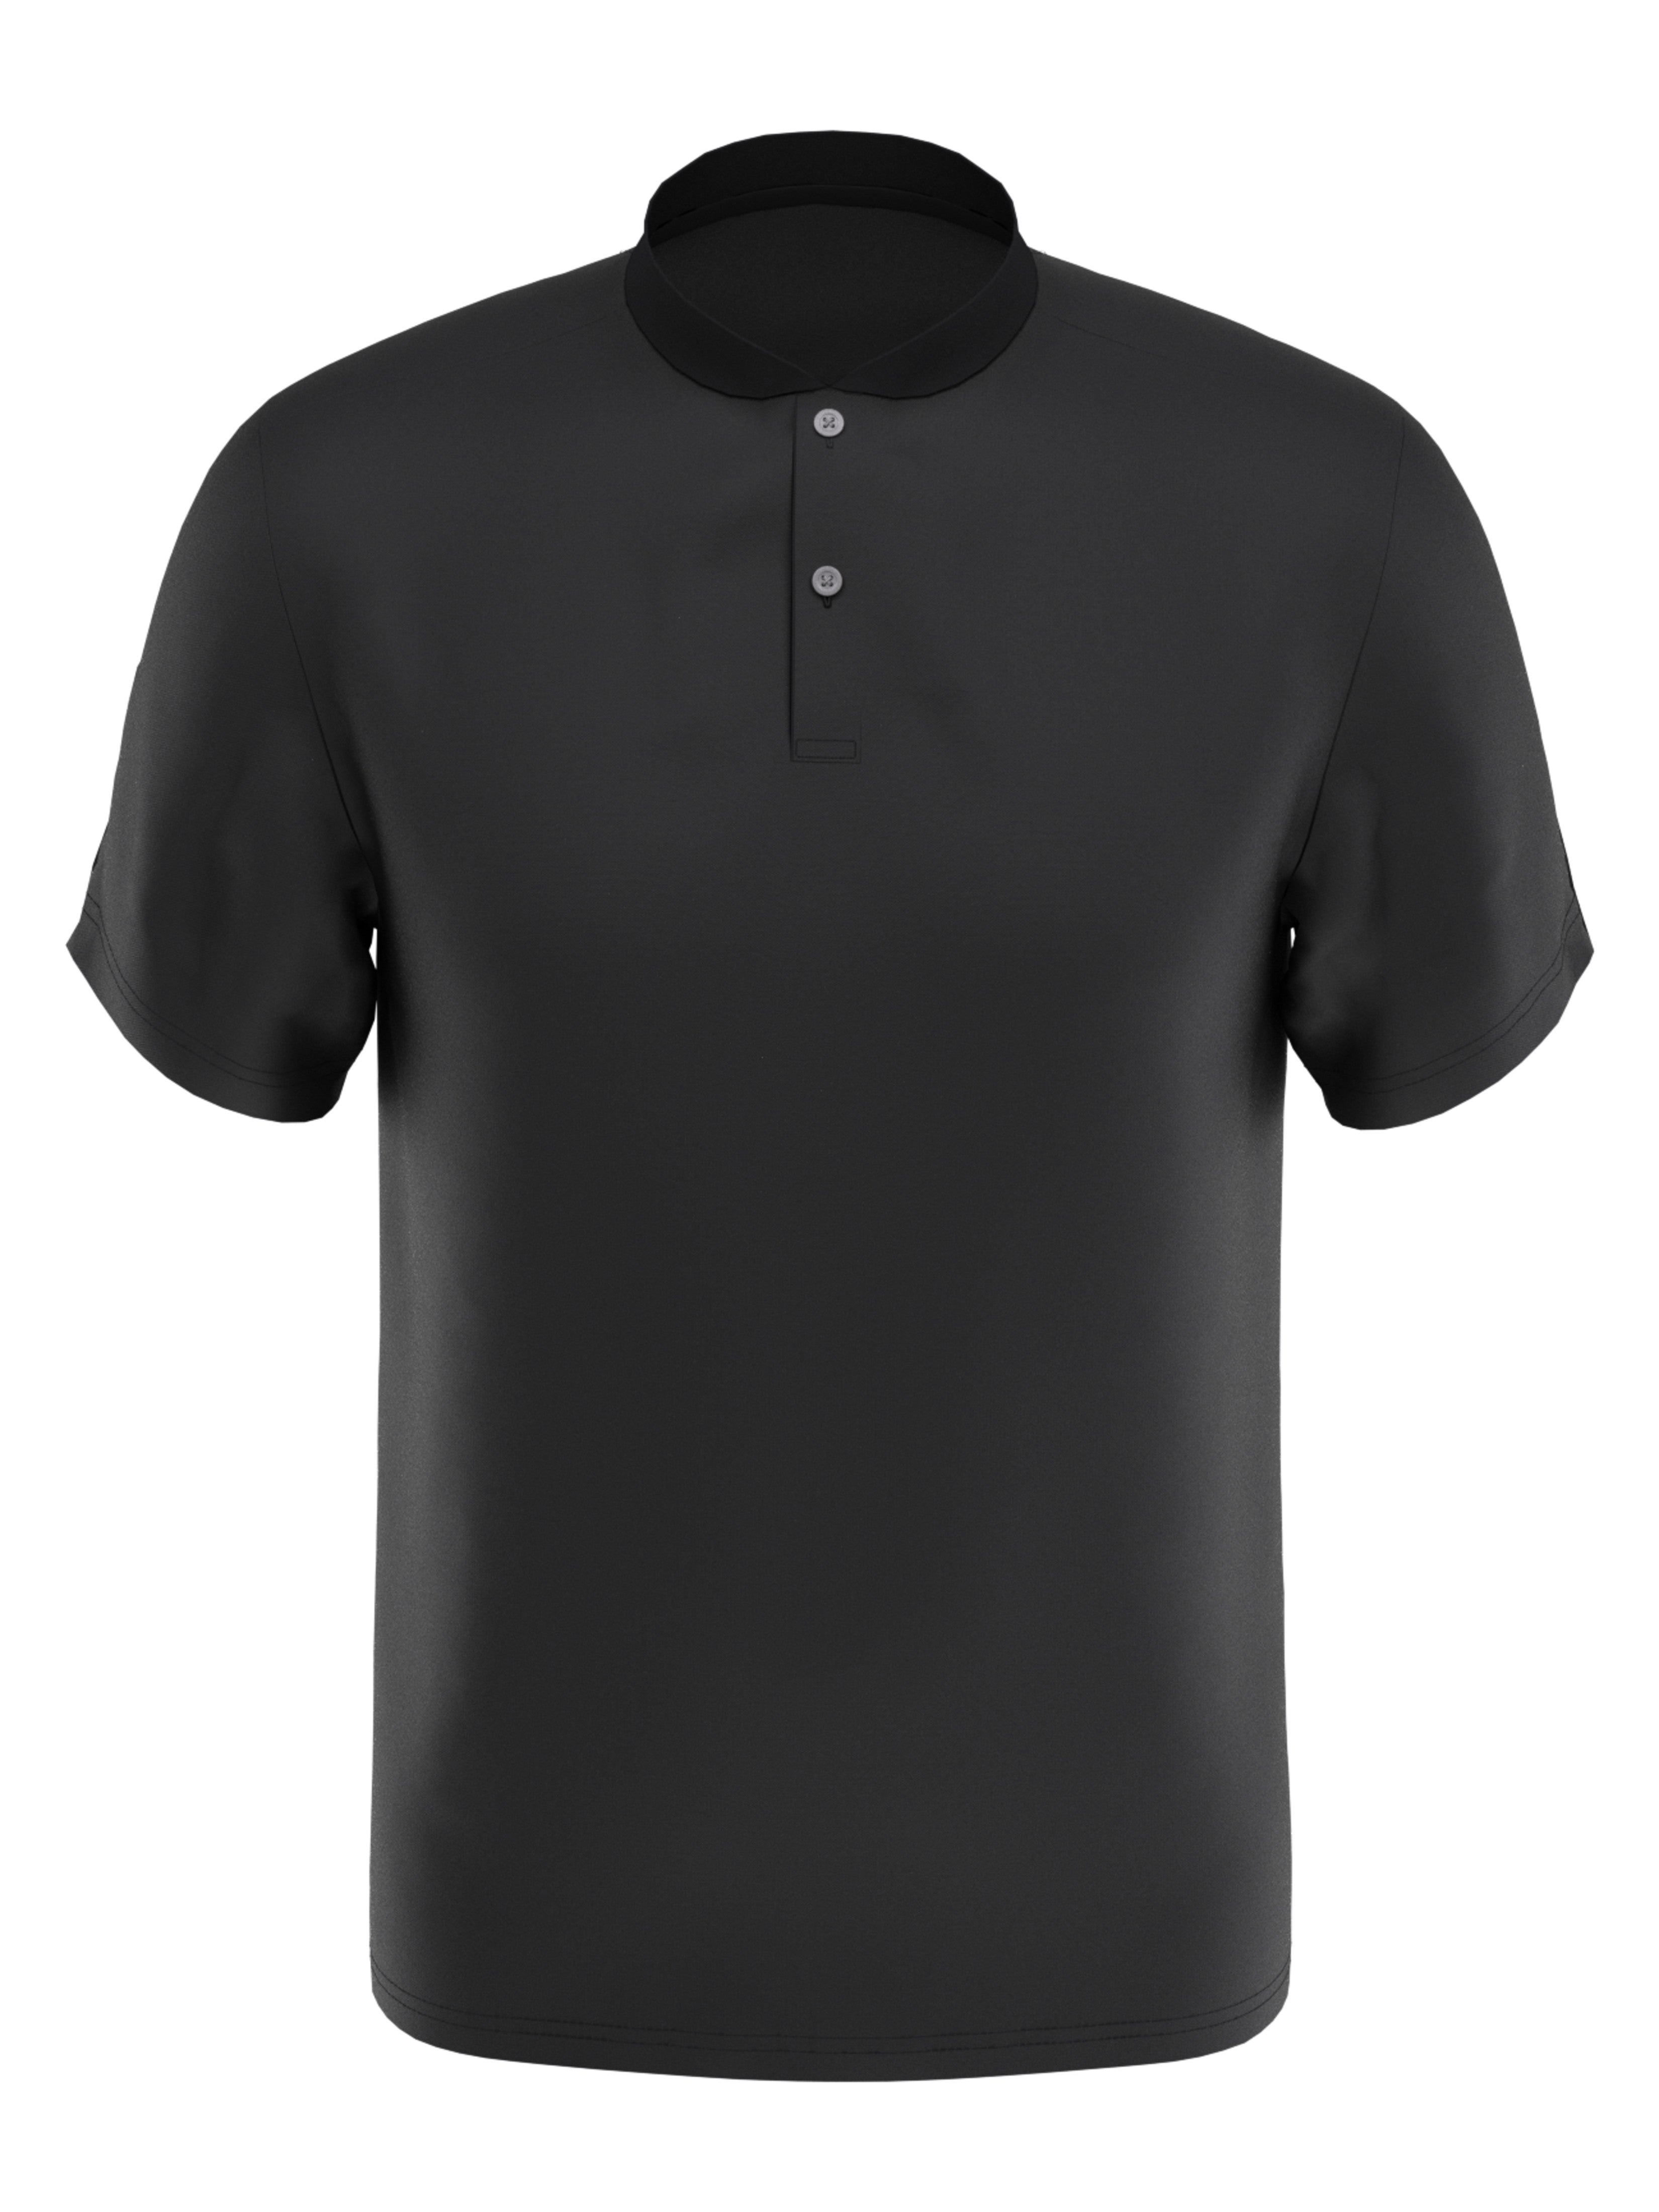 PGA TOUR Apparel Boys Edge Collar Pique Golf Polo Shirt, Size Small, Asphalt Gray, 100% Polyester | Golf Apparel Shop